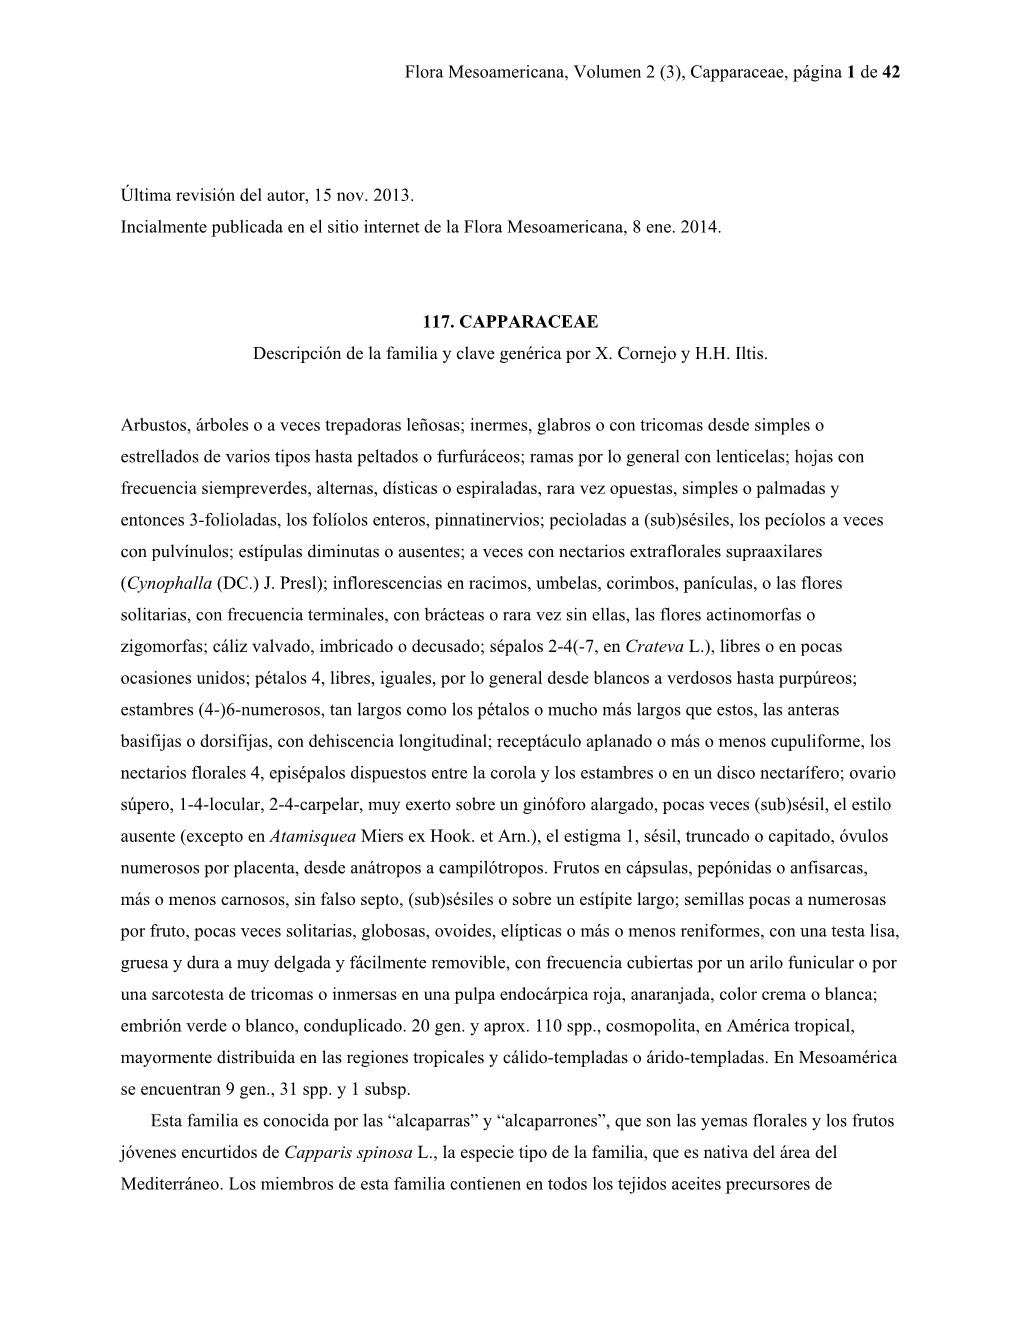 Flora Mesoamericana, Volumen 2 (3), Capparaceae, Página 1 De 42 Última Revisión Del Autor, 15 Nov. 2013. Incialmente Publicad